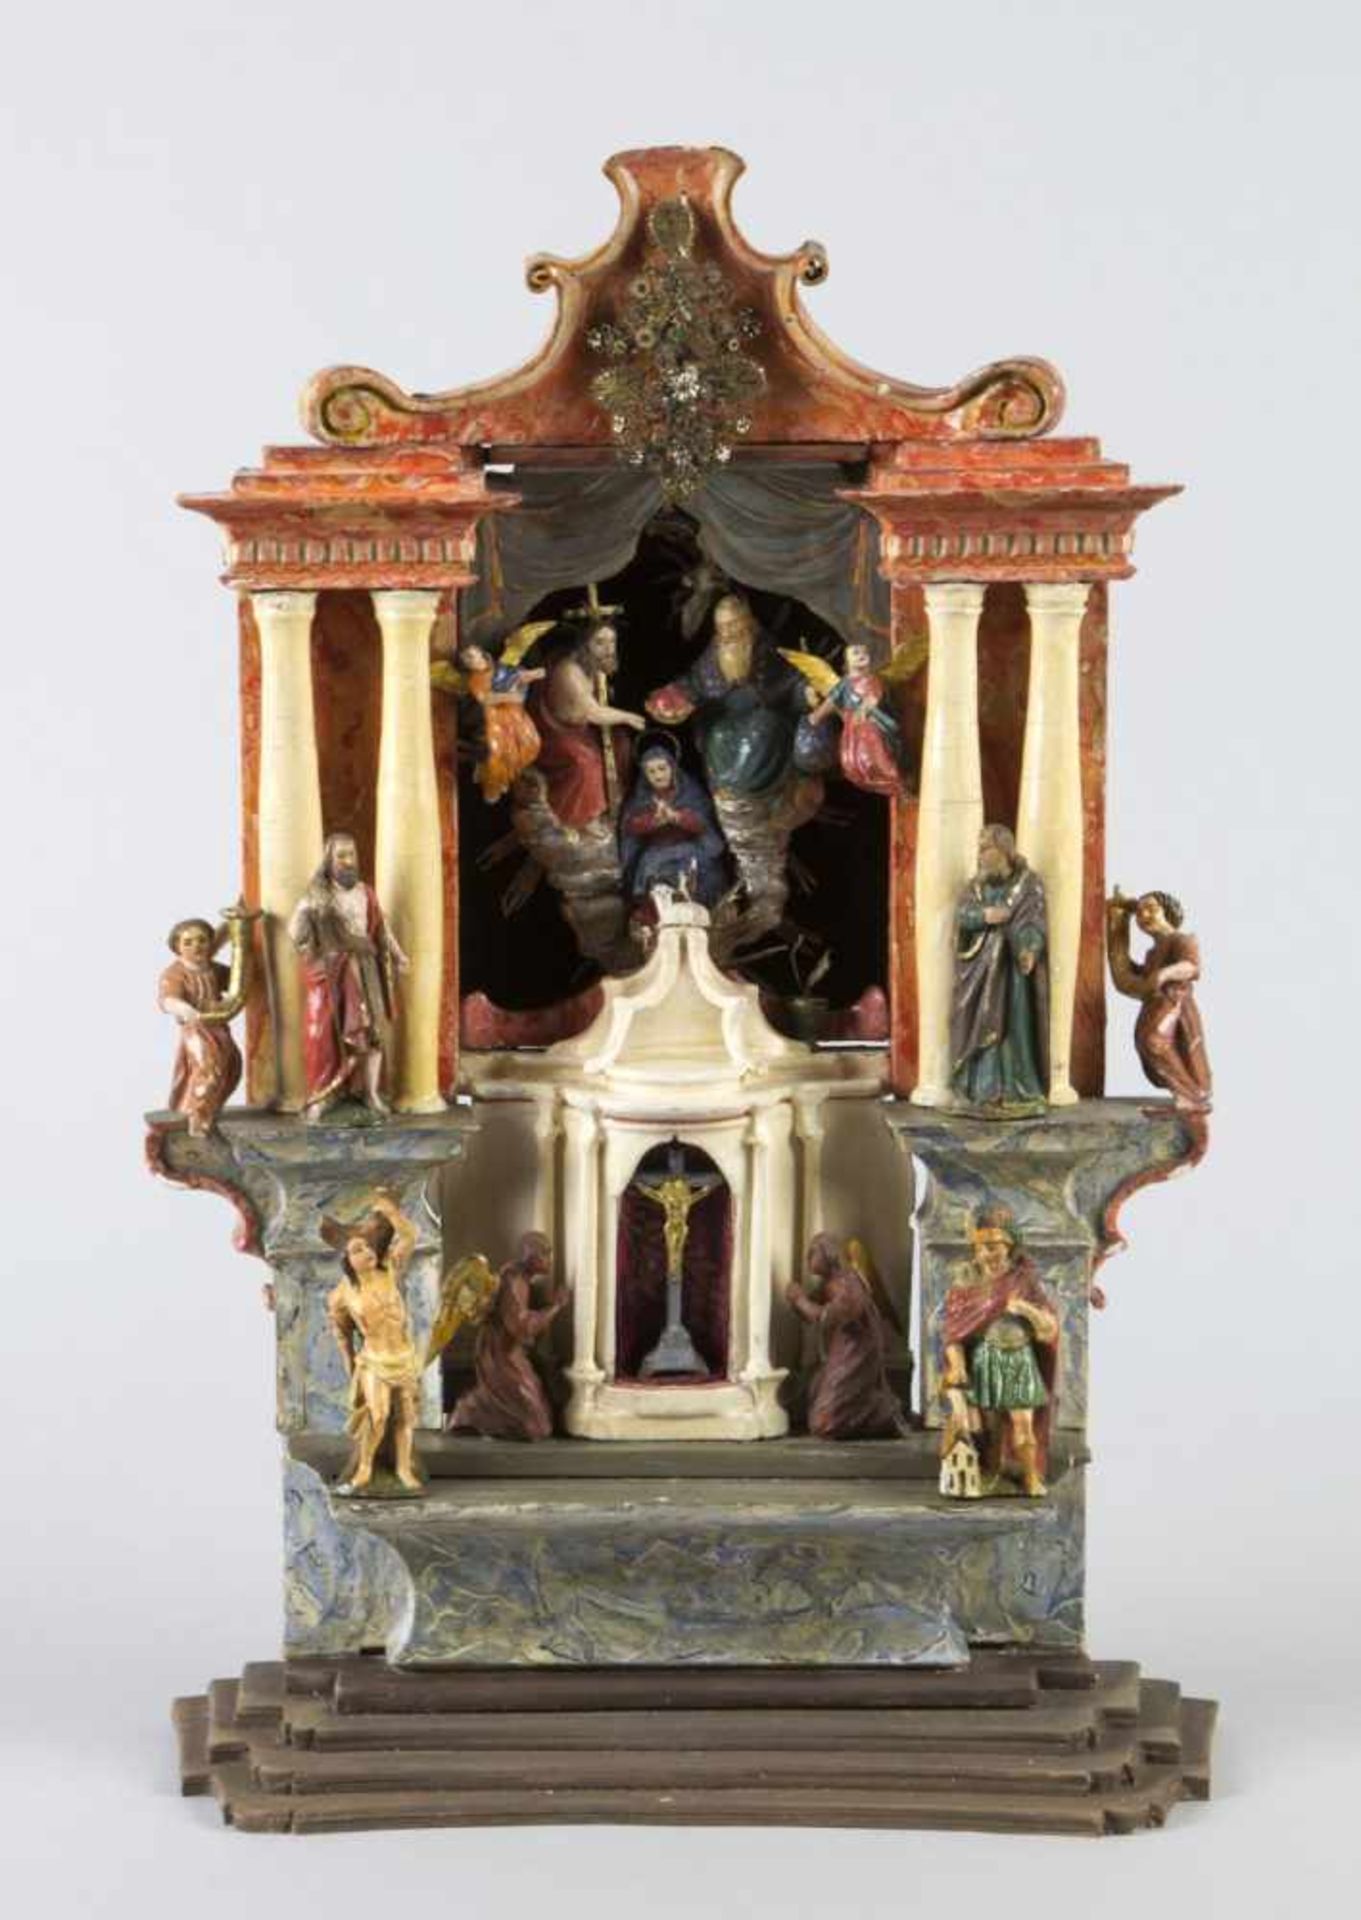 Miniatur-AltarHolz, geschnitzt. Farbfassung. Säulenarchitektur, mittig drehbare Nische. Bestückt mit